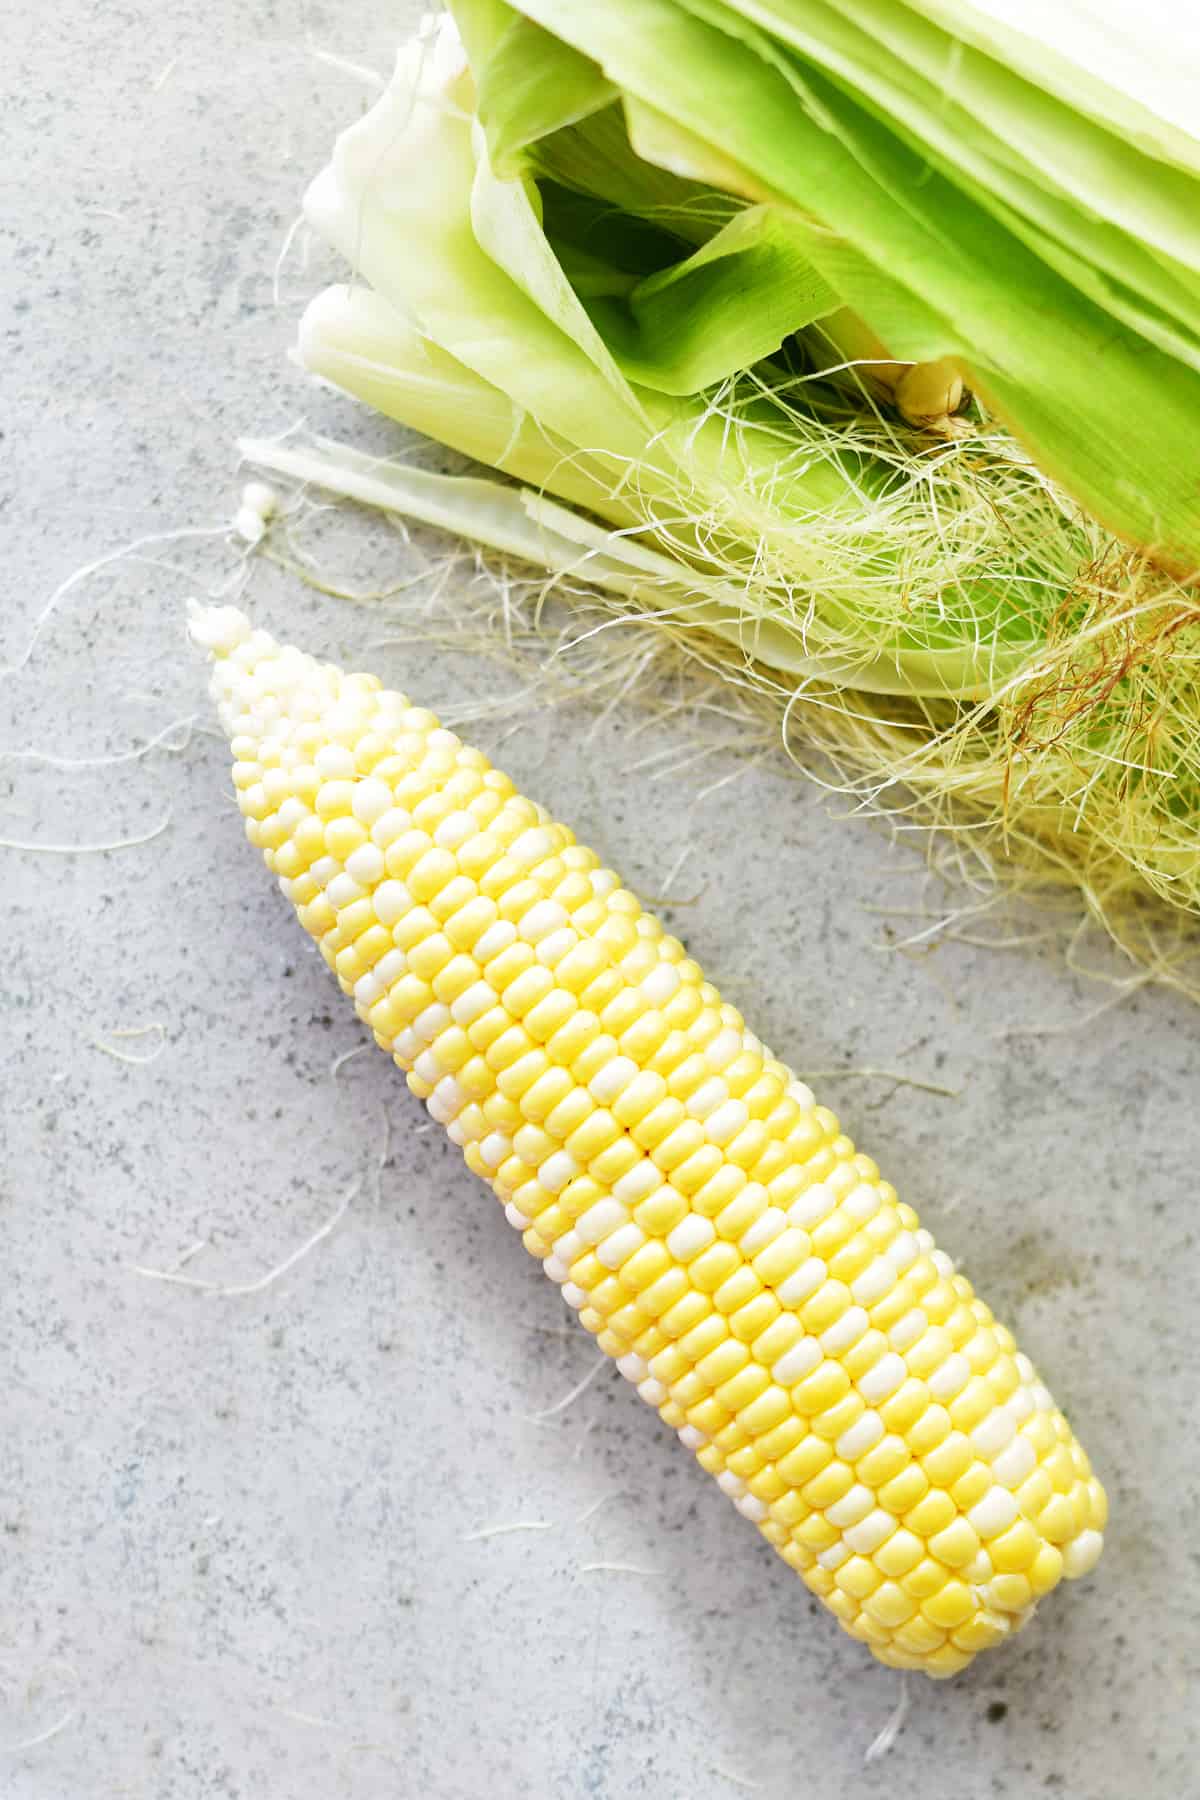 peeled corn on the cob